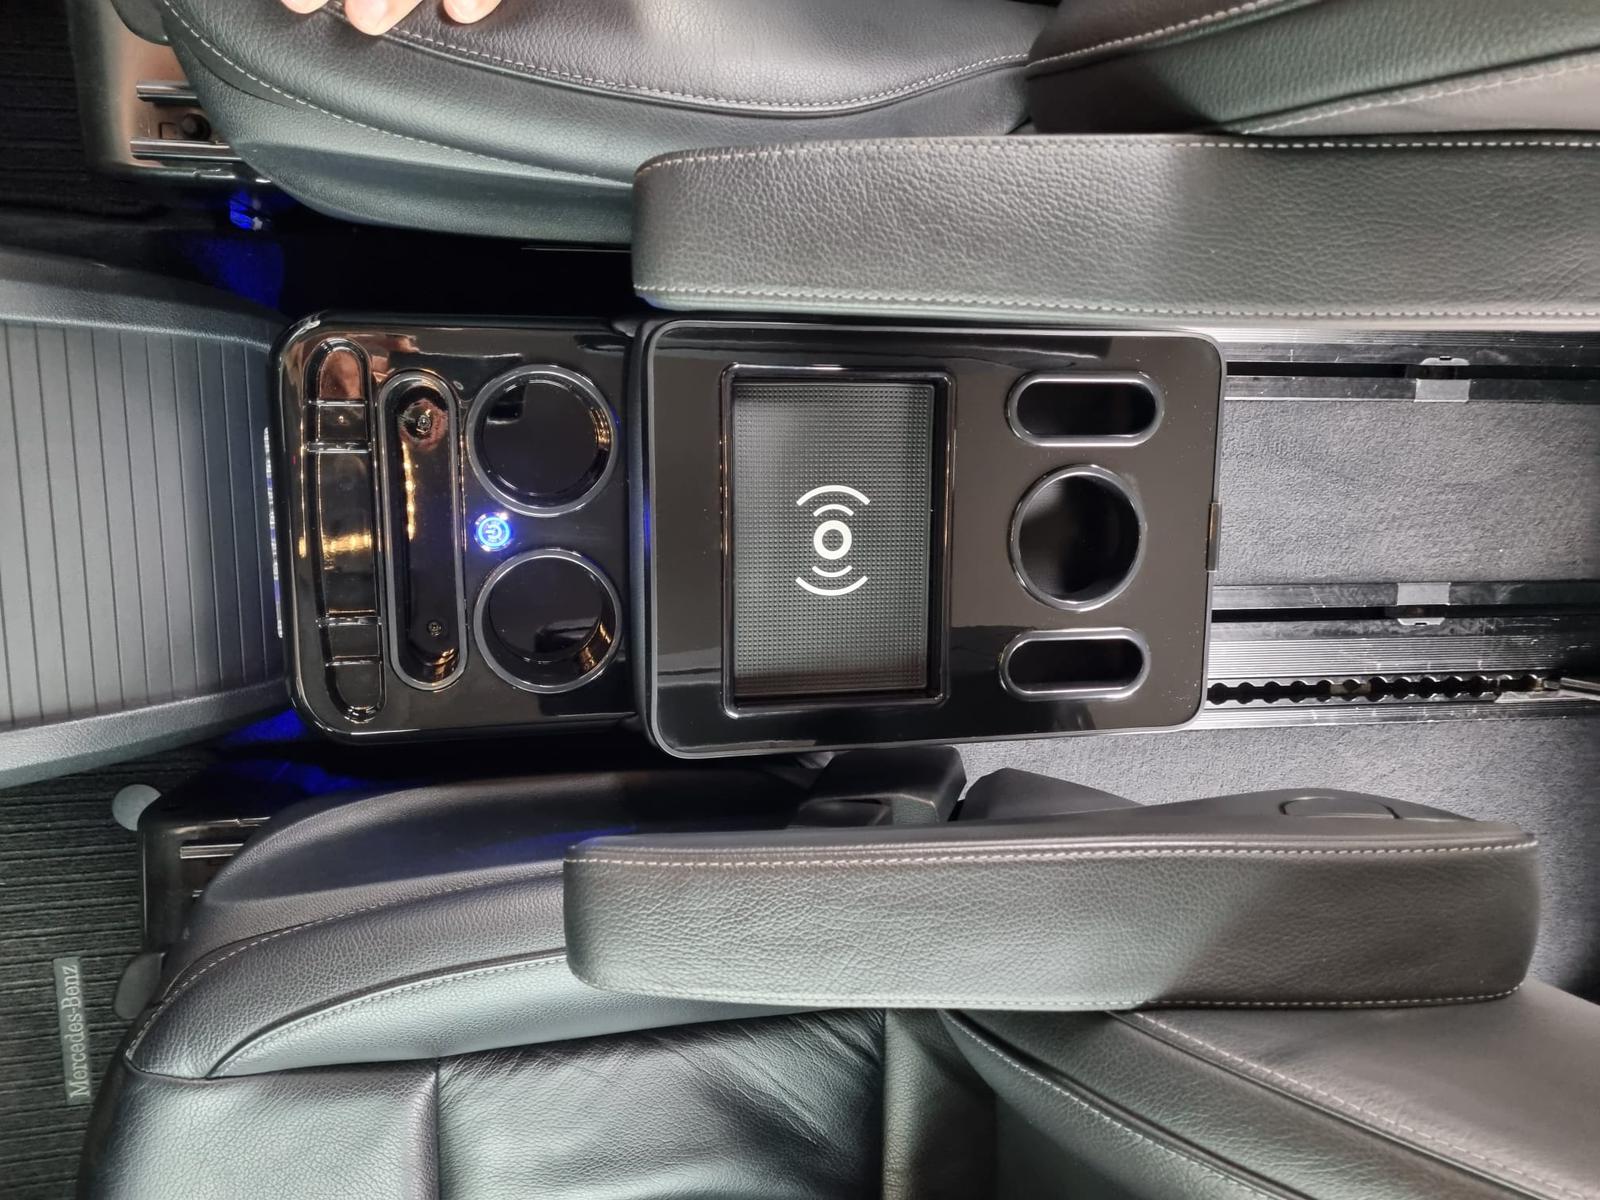 Black Edition Staufach Mittelkonsole Ablage für alle Mercedes Benz Vito / V- Klasse W447 14-23 mit LED Beleuchtung, USB und Induktions-Ladestation